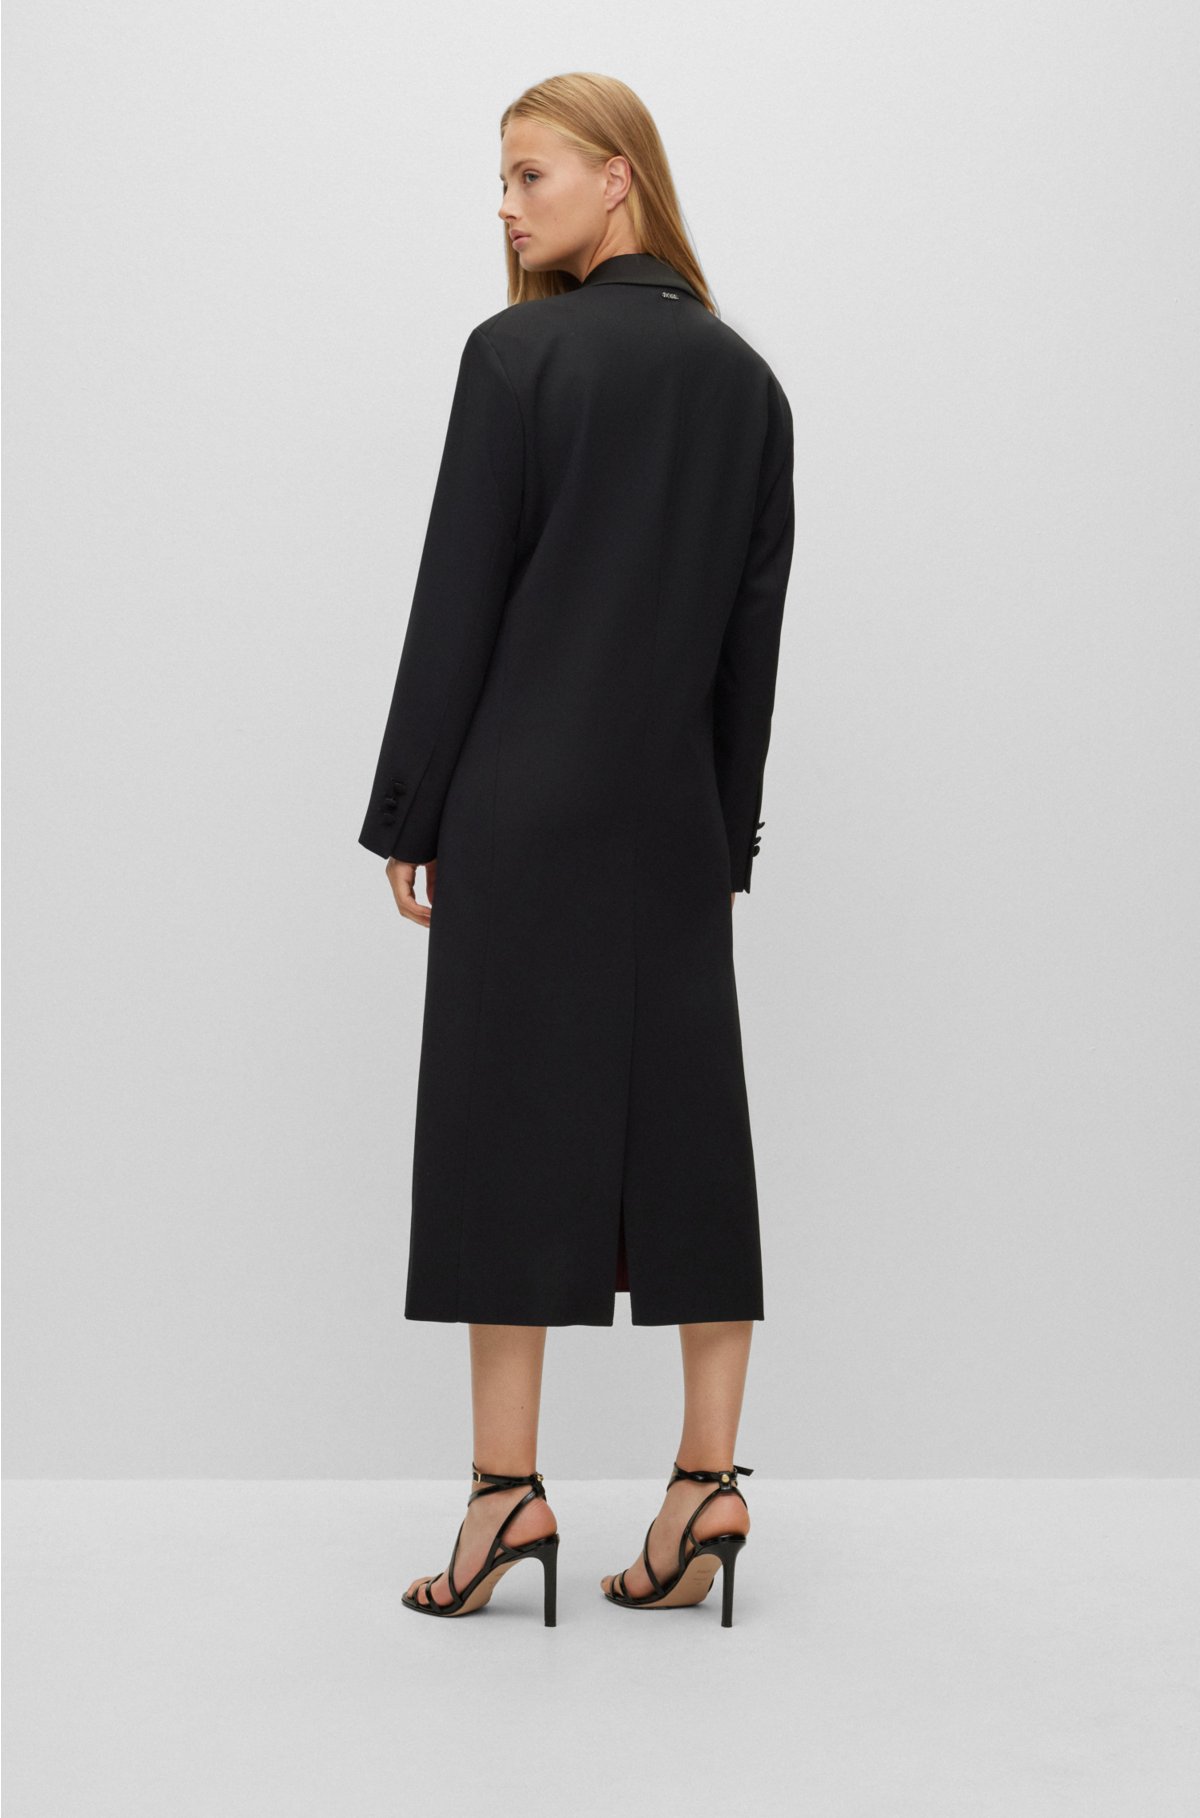 BOSS - Oversize-fit tuxedo coat in a wool blend